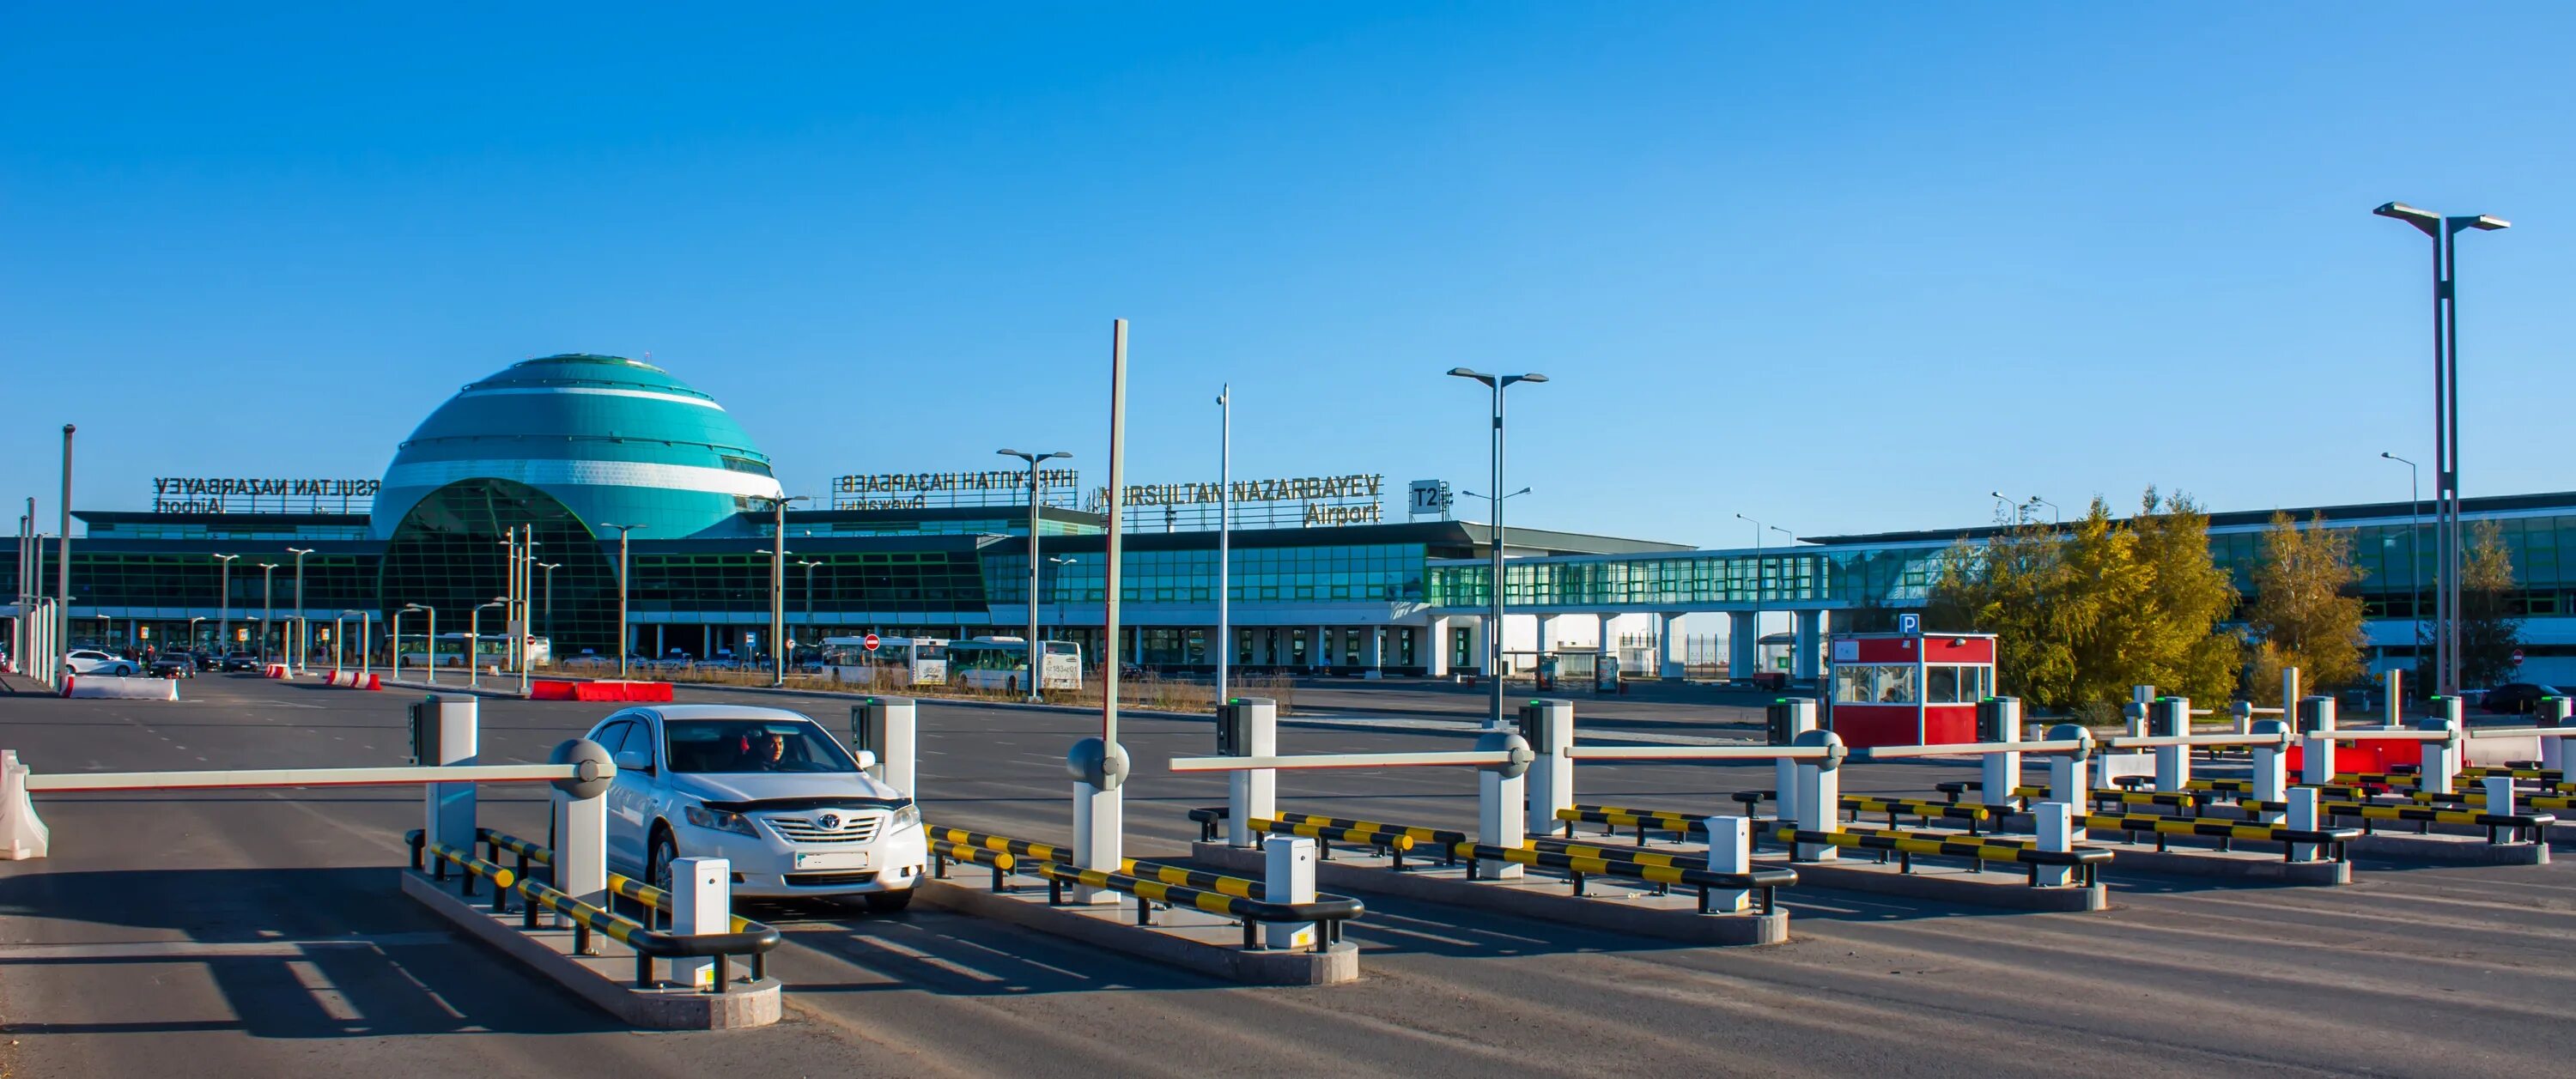 Сколько аэропортов в астане. Международный аэропорт Нурсултан Назарбаев. Астана аэропорт терминал 1. Терминал 2 аэропорт Астана. Автостоянка аэропорт Астана.